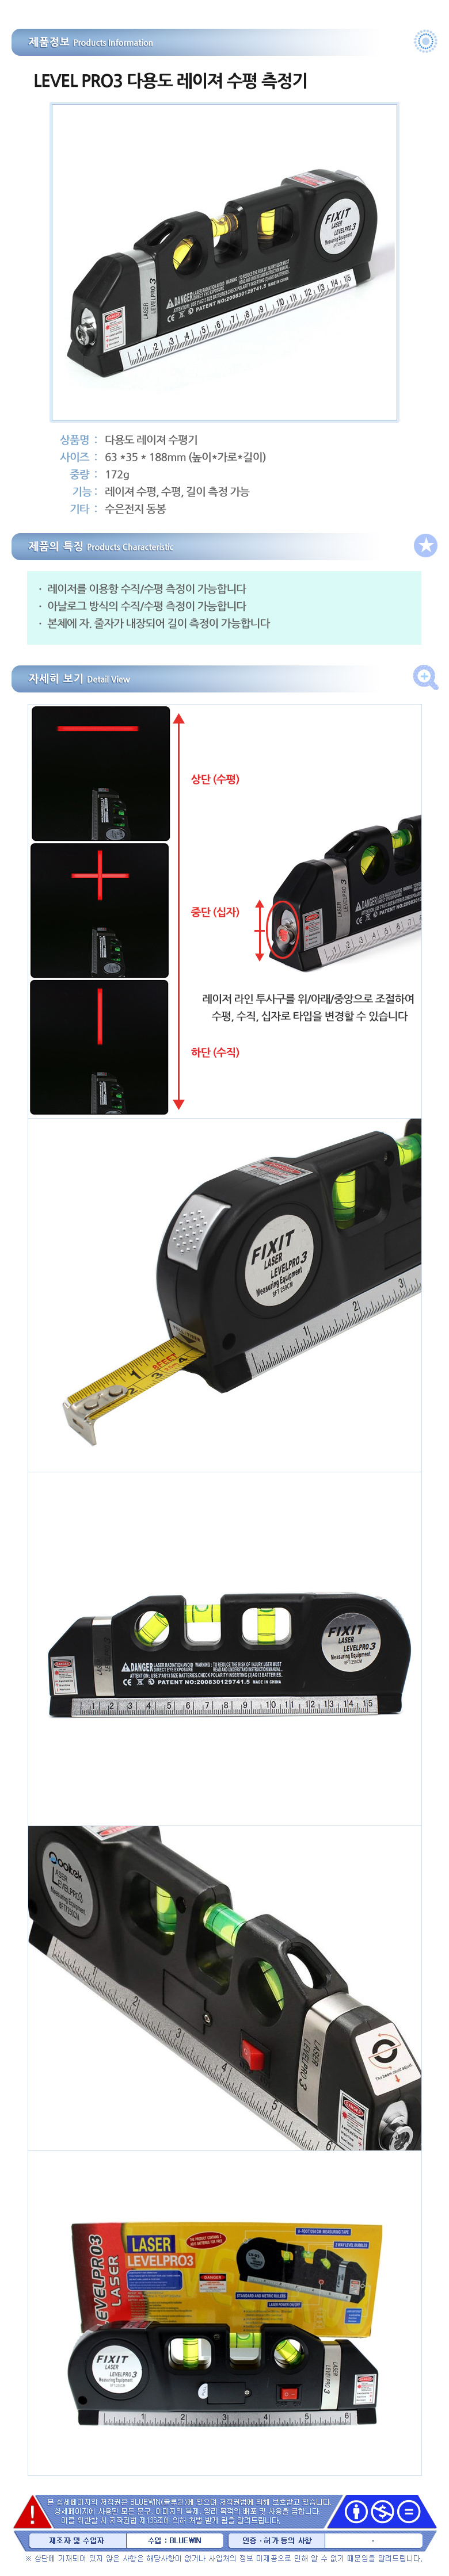 fixit laser level pro 3 instruction manual